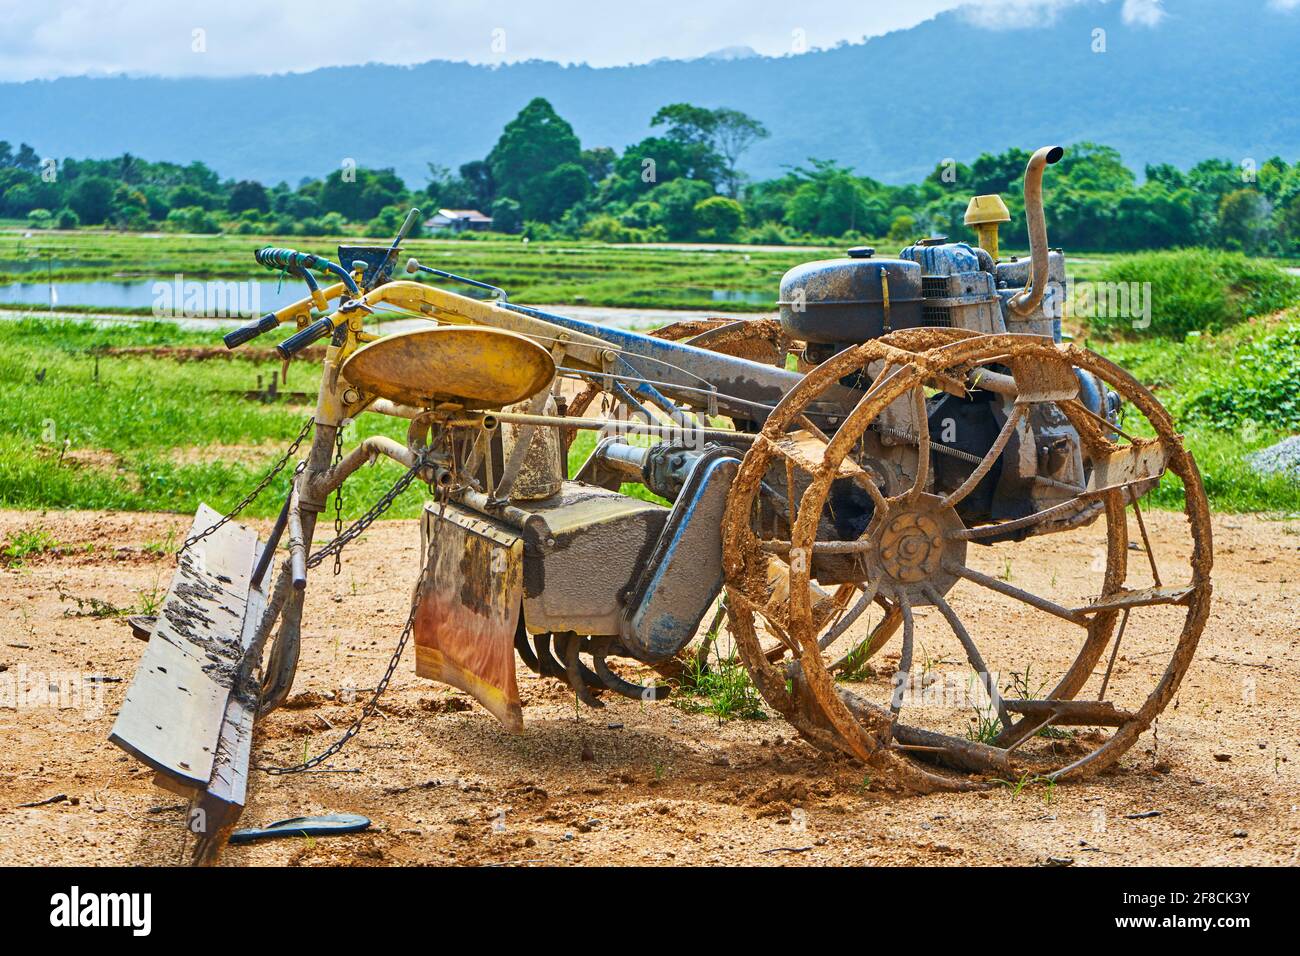 Un étrange outil fait maison pour labourer un champ d'une moto  reconstruite. Village agricole en Asie Photo Stock - Alamy